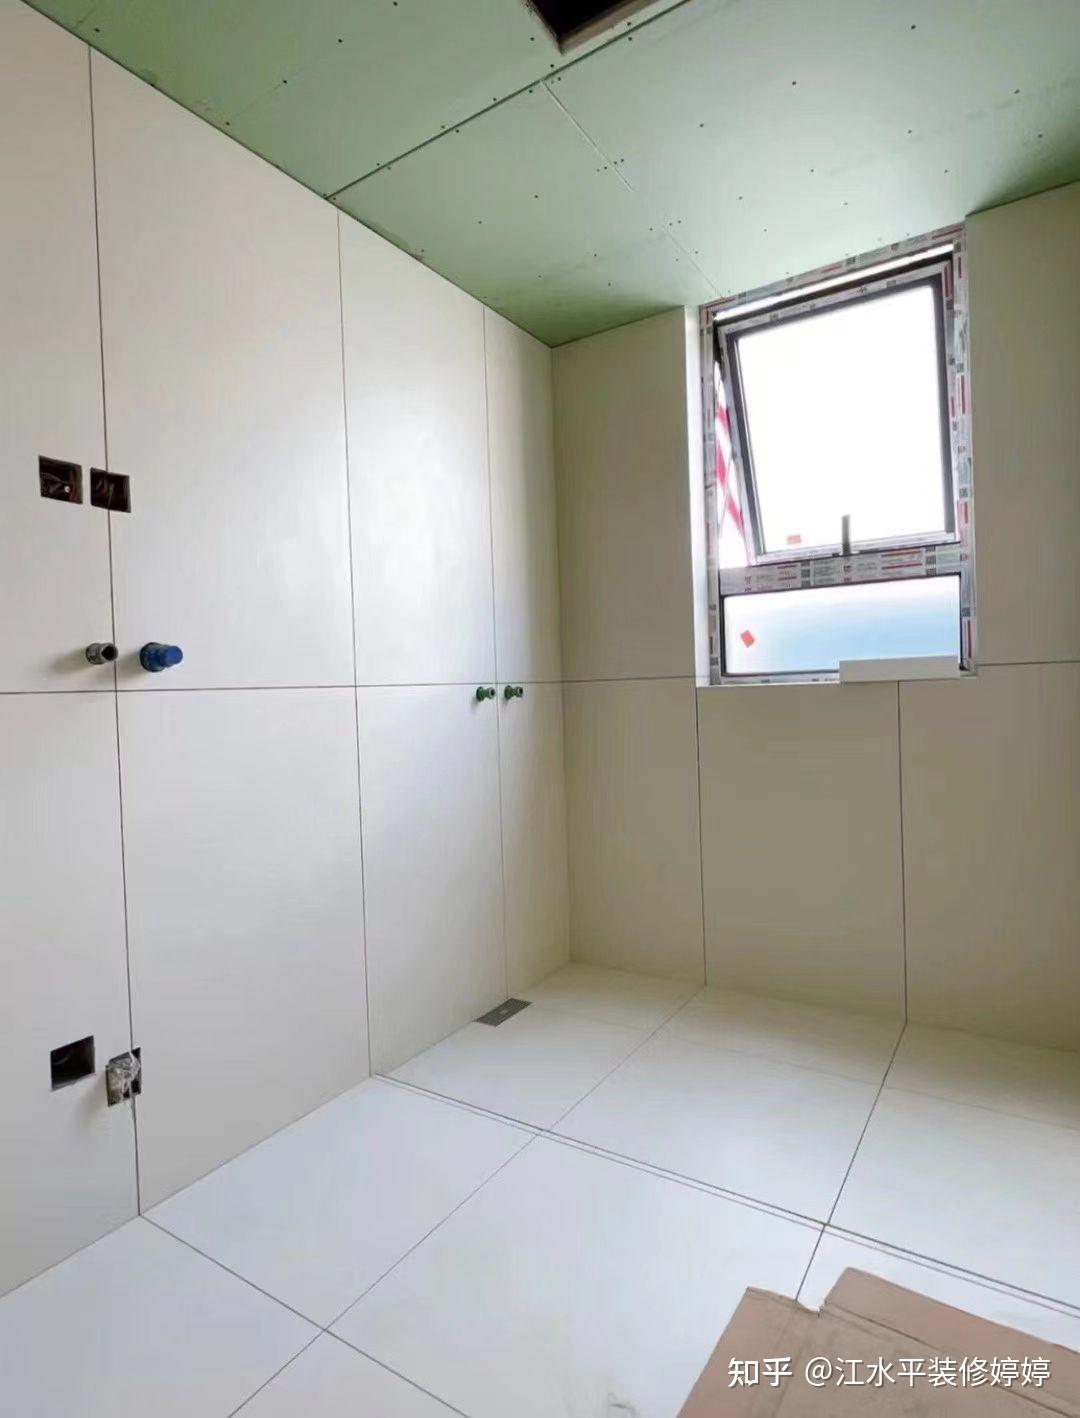 1:卫生间做干湿分离,干区贴大地砖,淋浴区用瓷砖或石材拉槽,做回字形